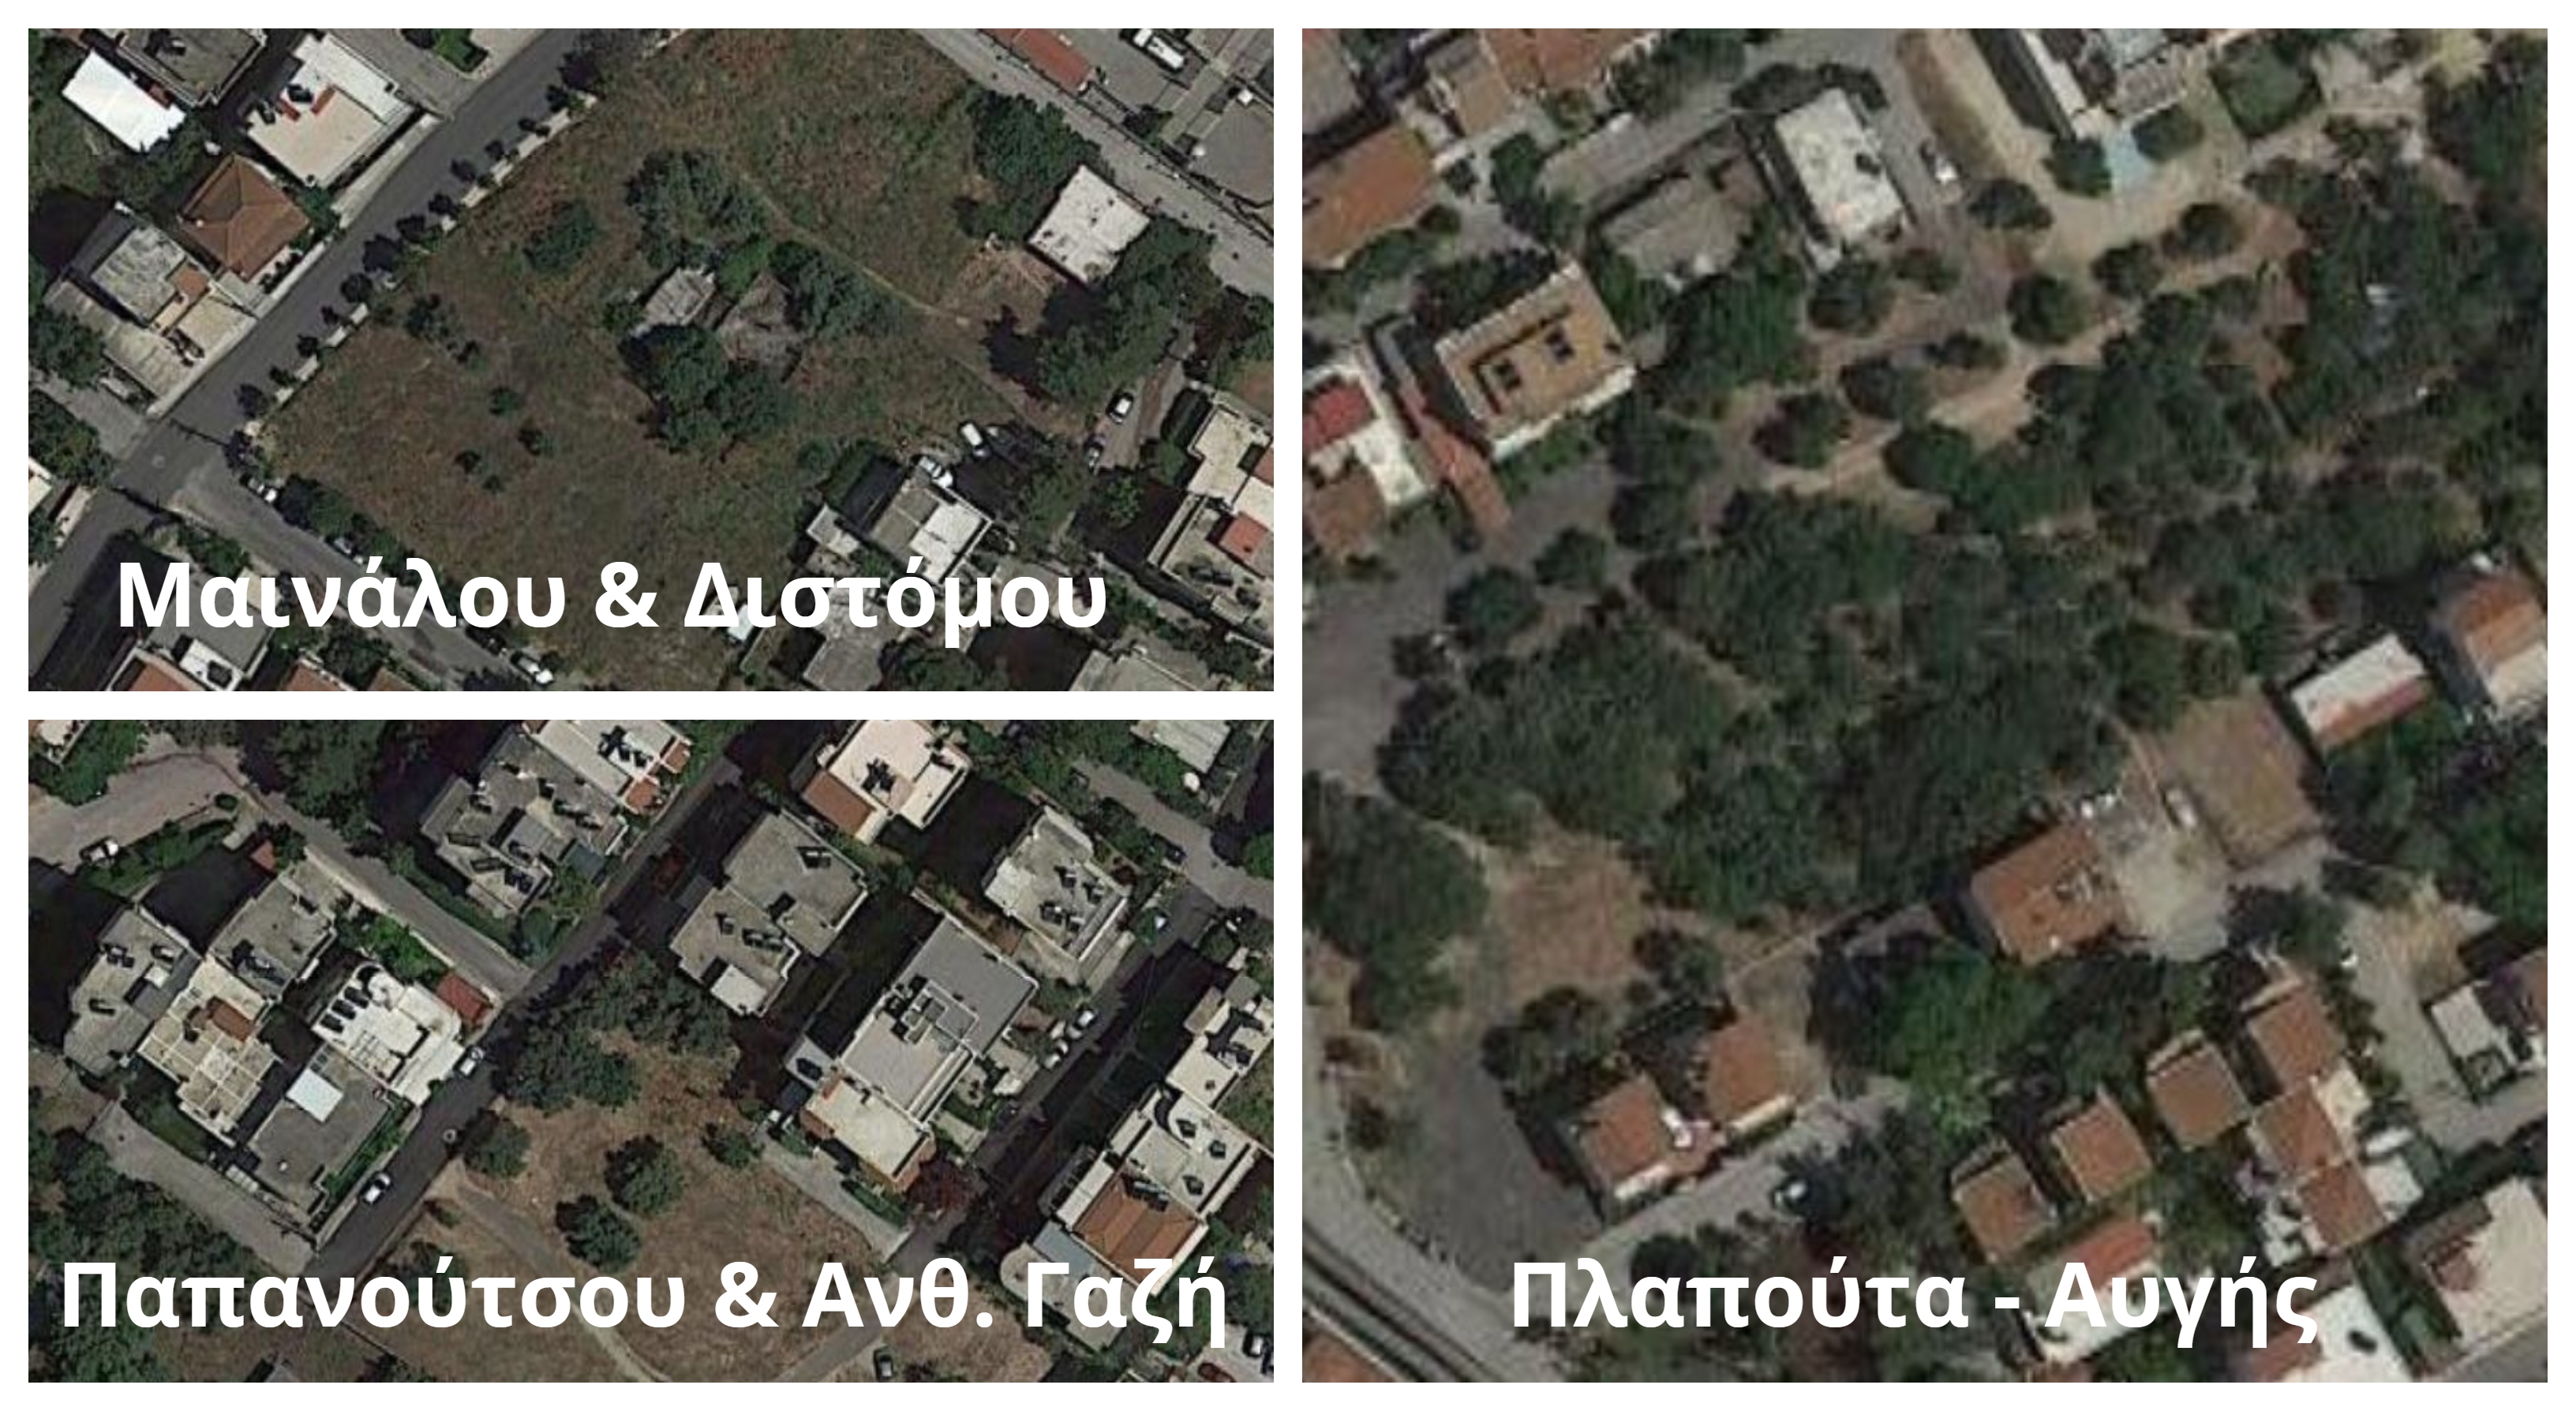 Νέες αγορές ελεύθερων εκτάσεων δρομολογεί ο Δήμος Ηρακλείου Αττικής